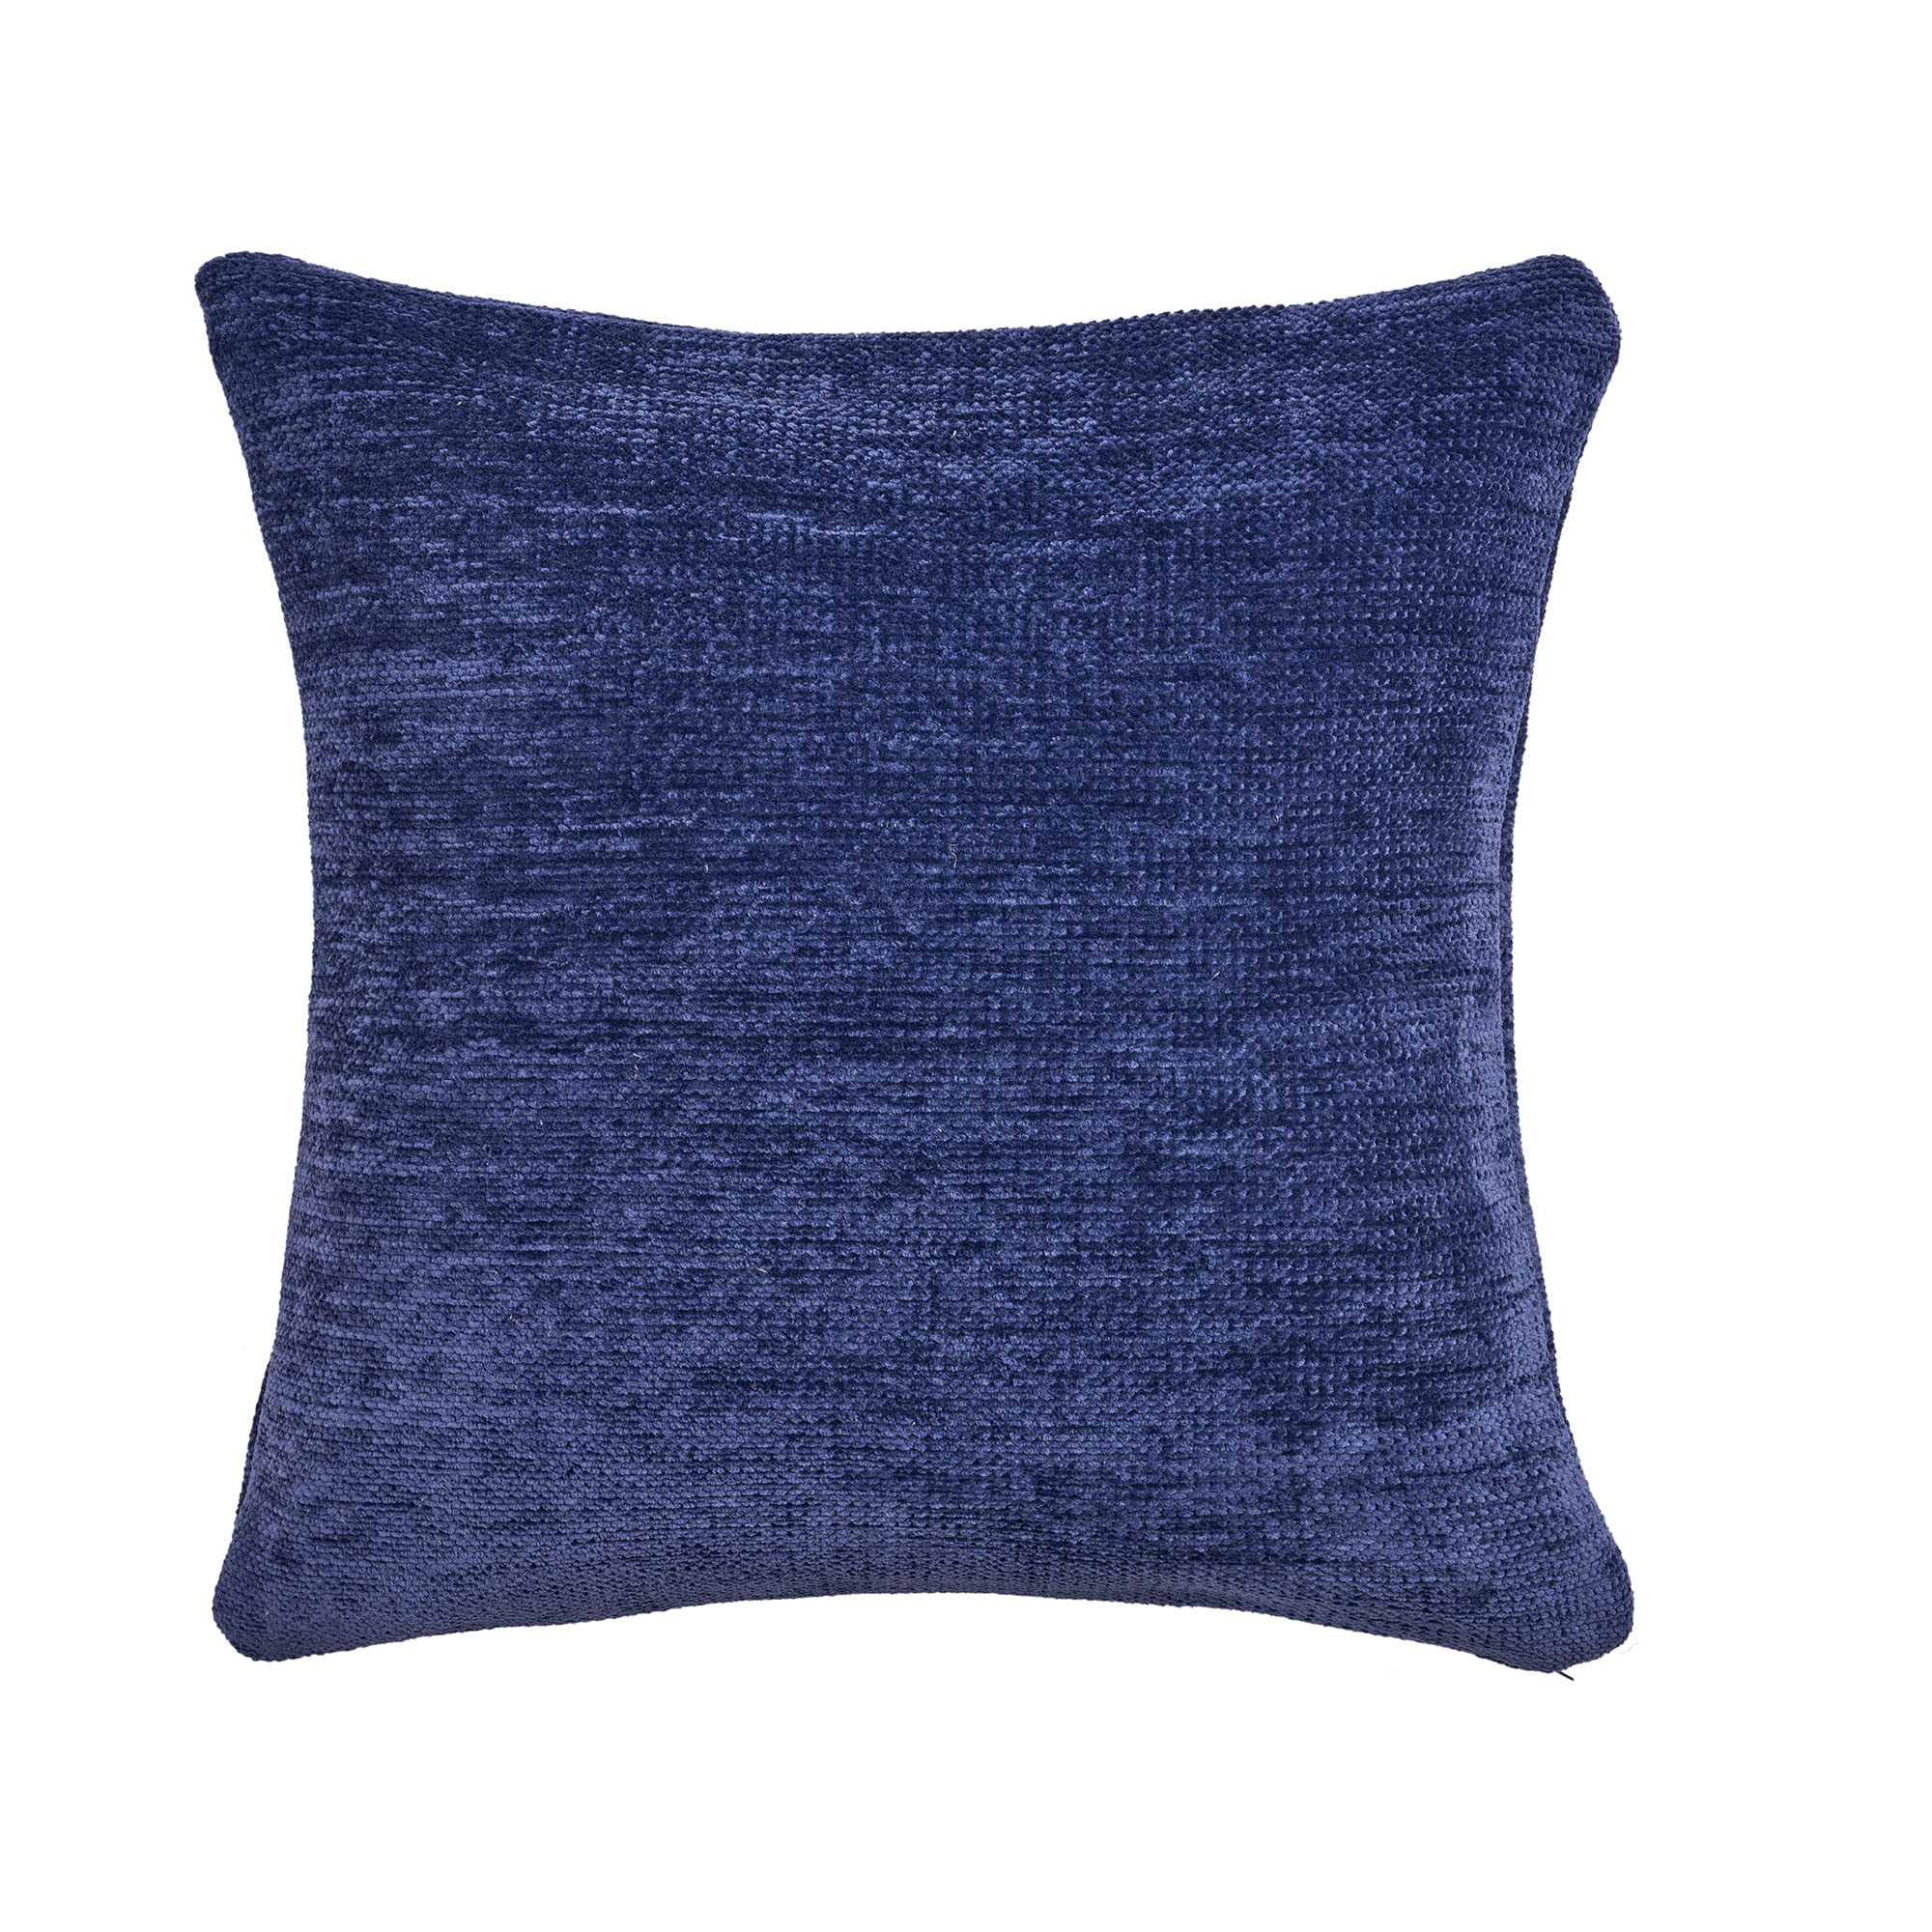 20" X 20" Blue Chenille Zippered Pillow-535255-1